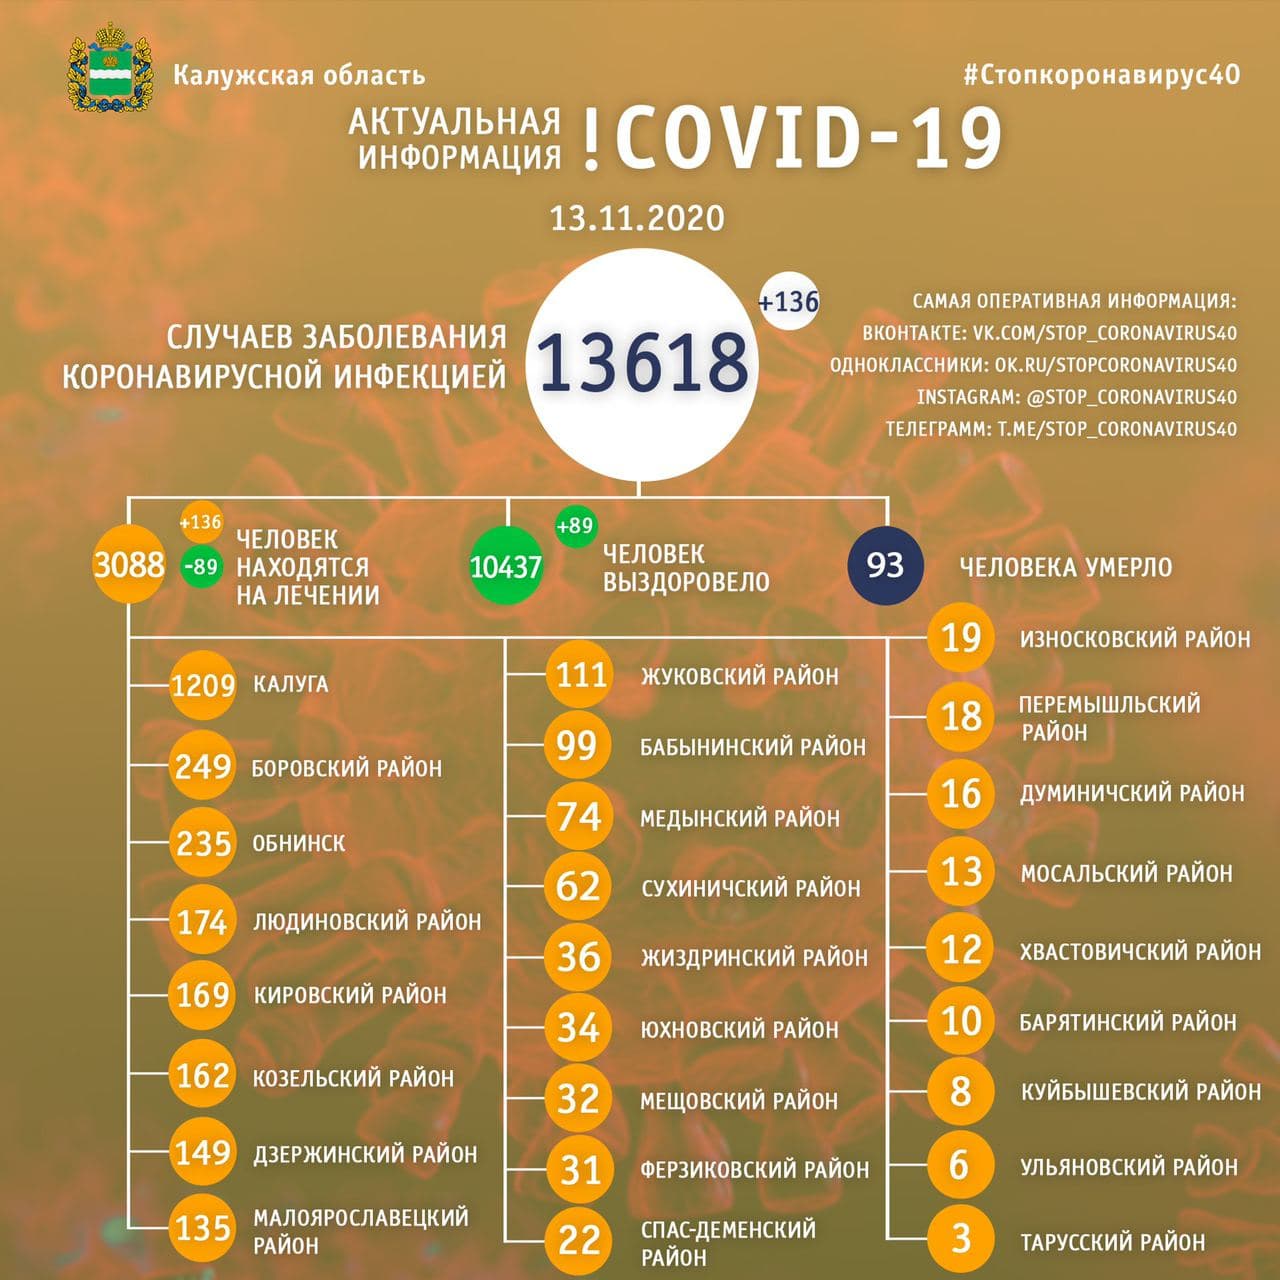 Официальная статистика по коронавирусу в Калужской области на 13 ноября 2020 года.